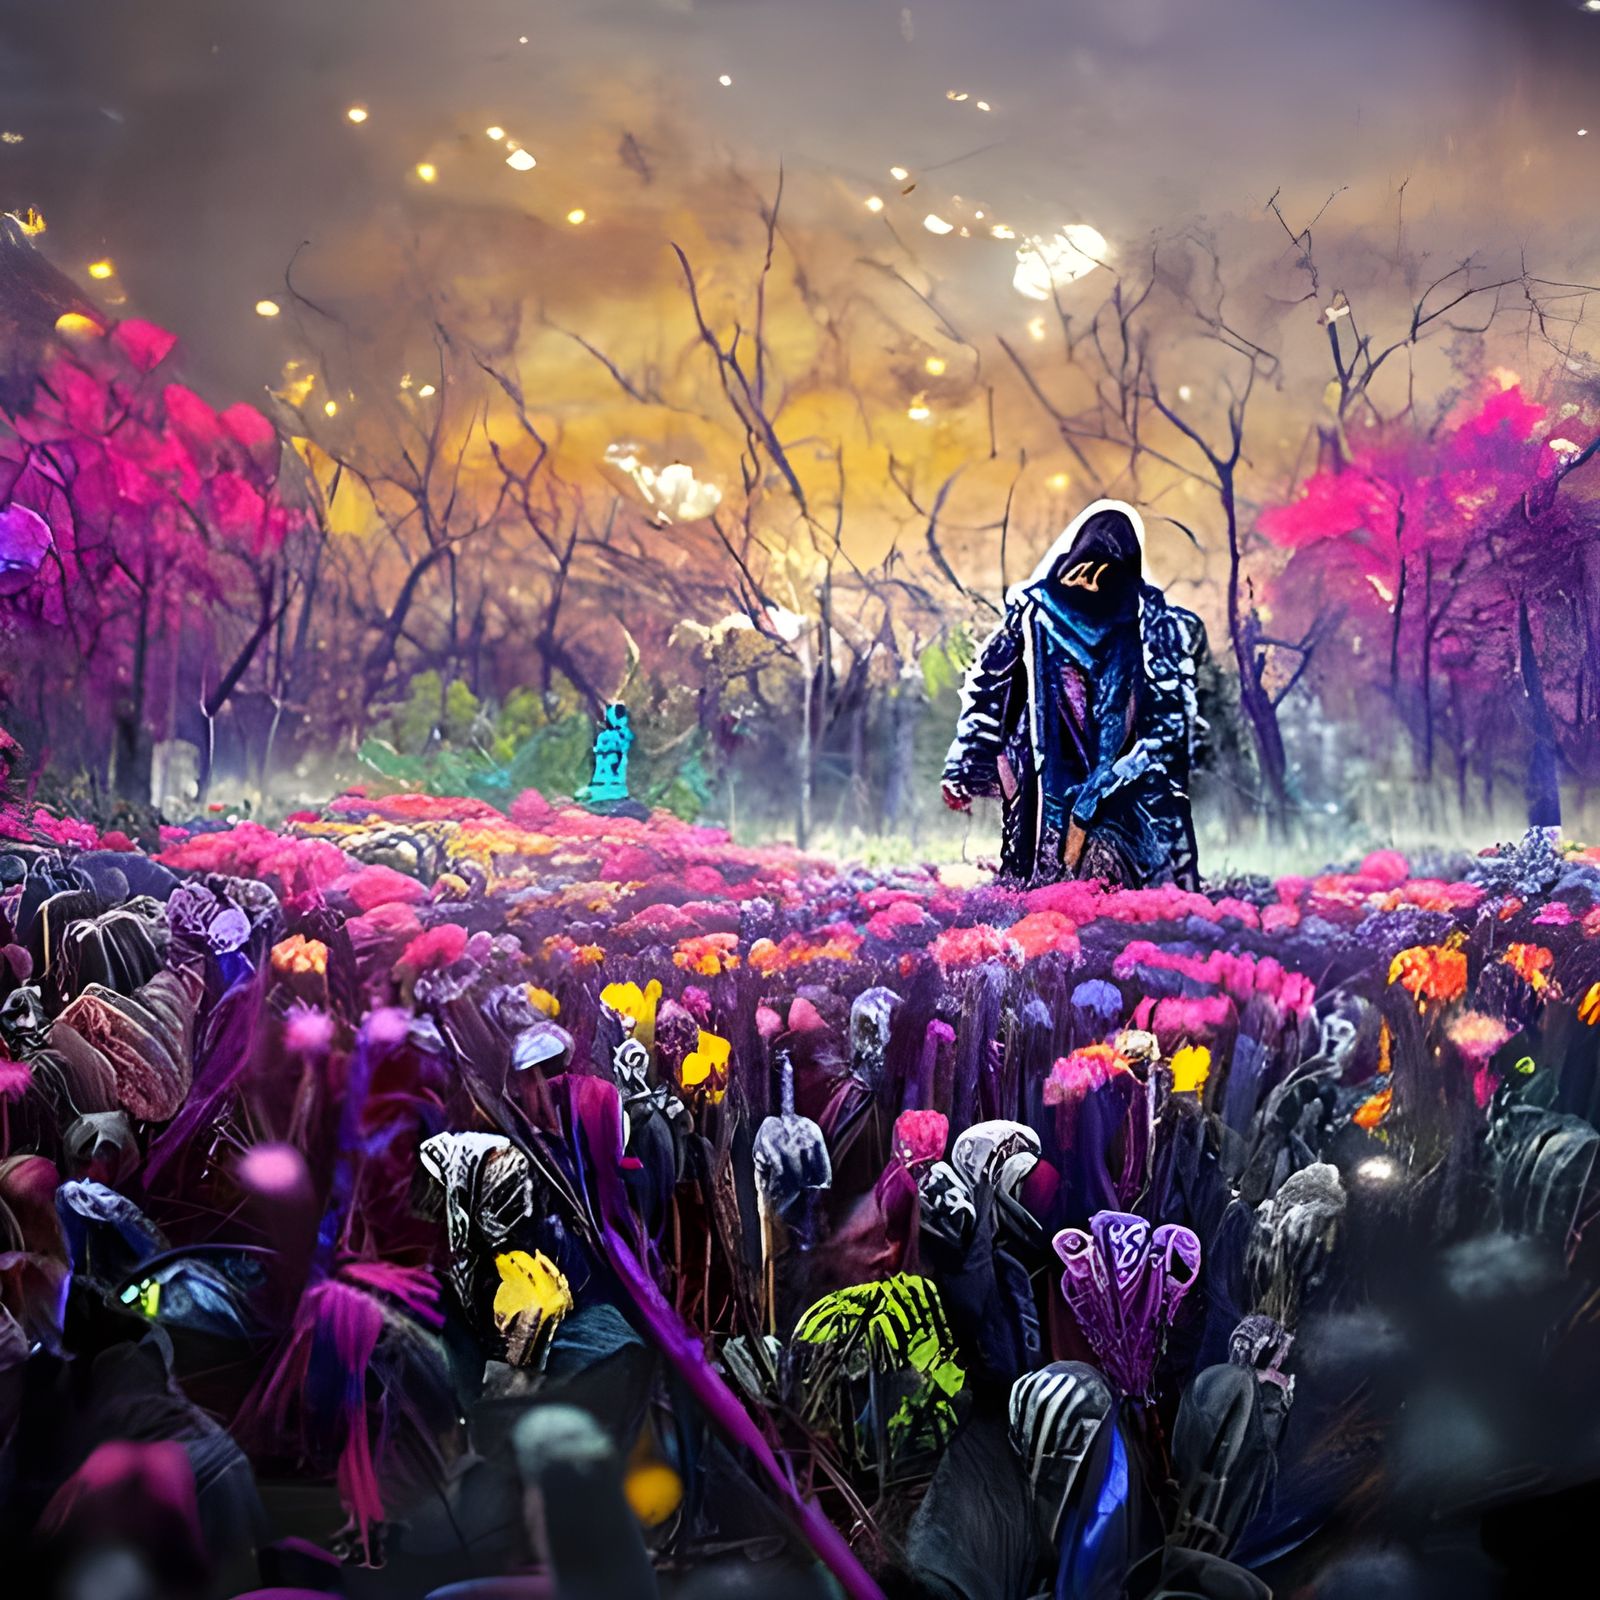 A Wanderer walks through a field of flowers